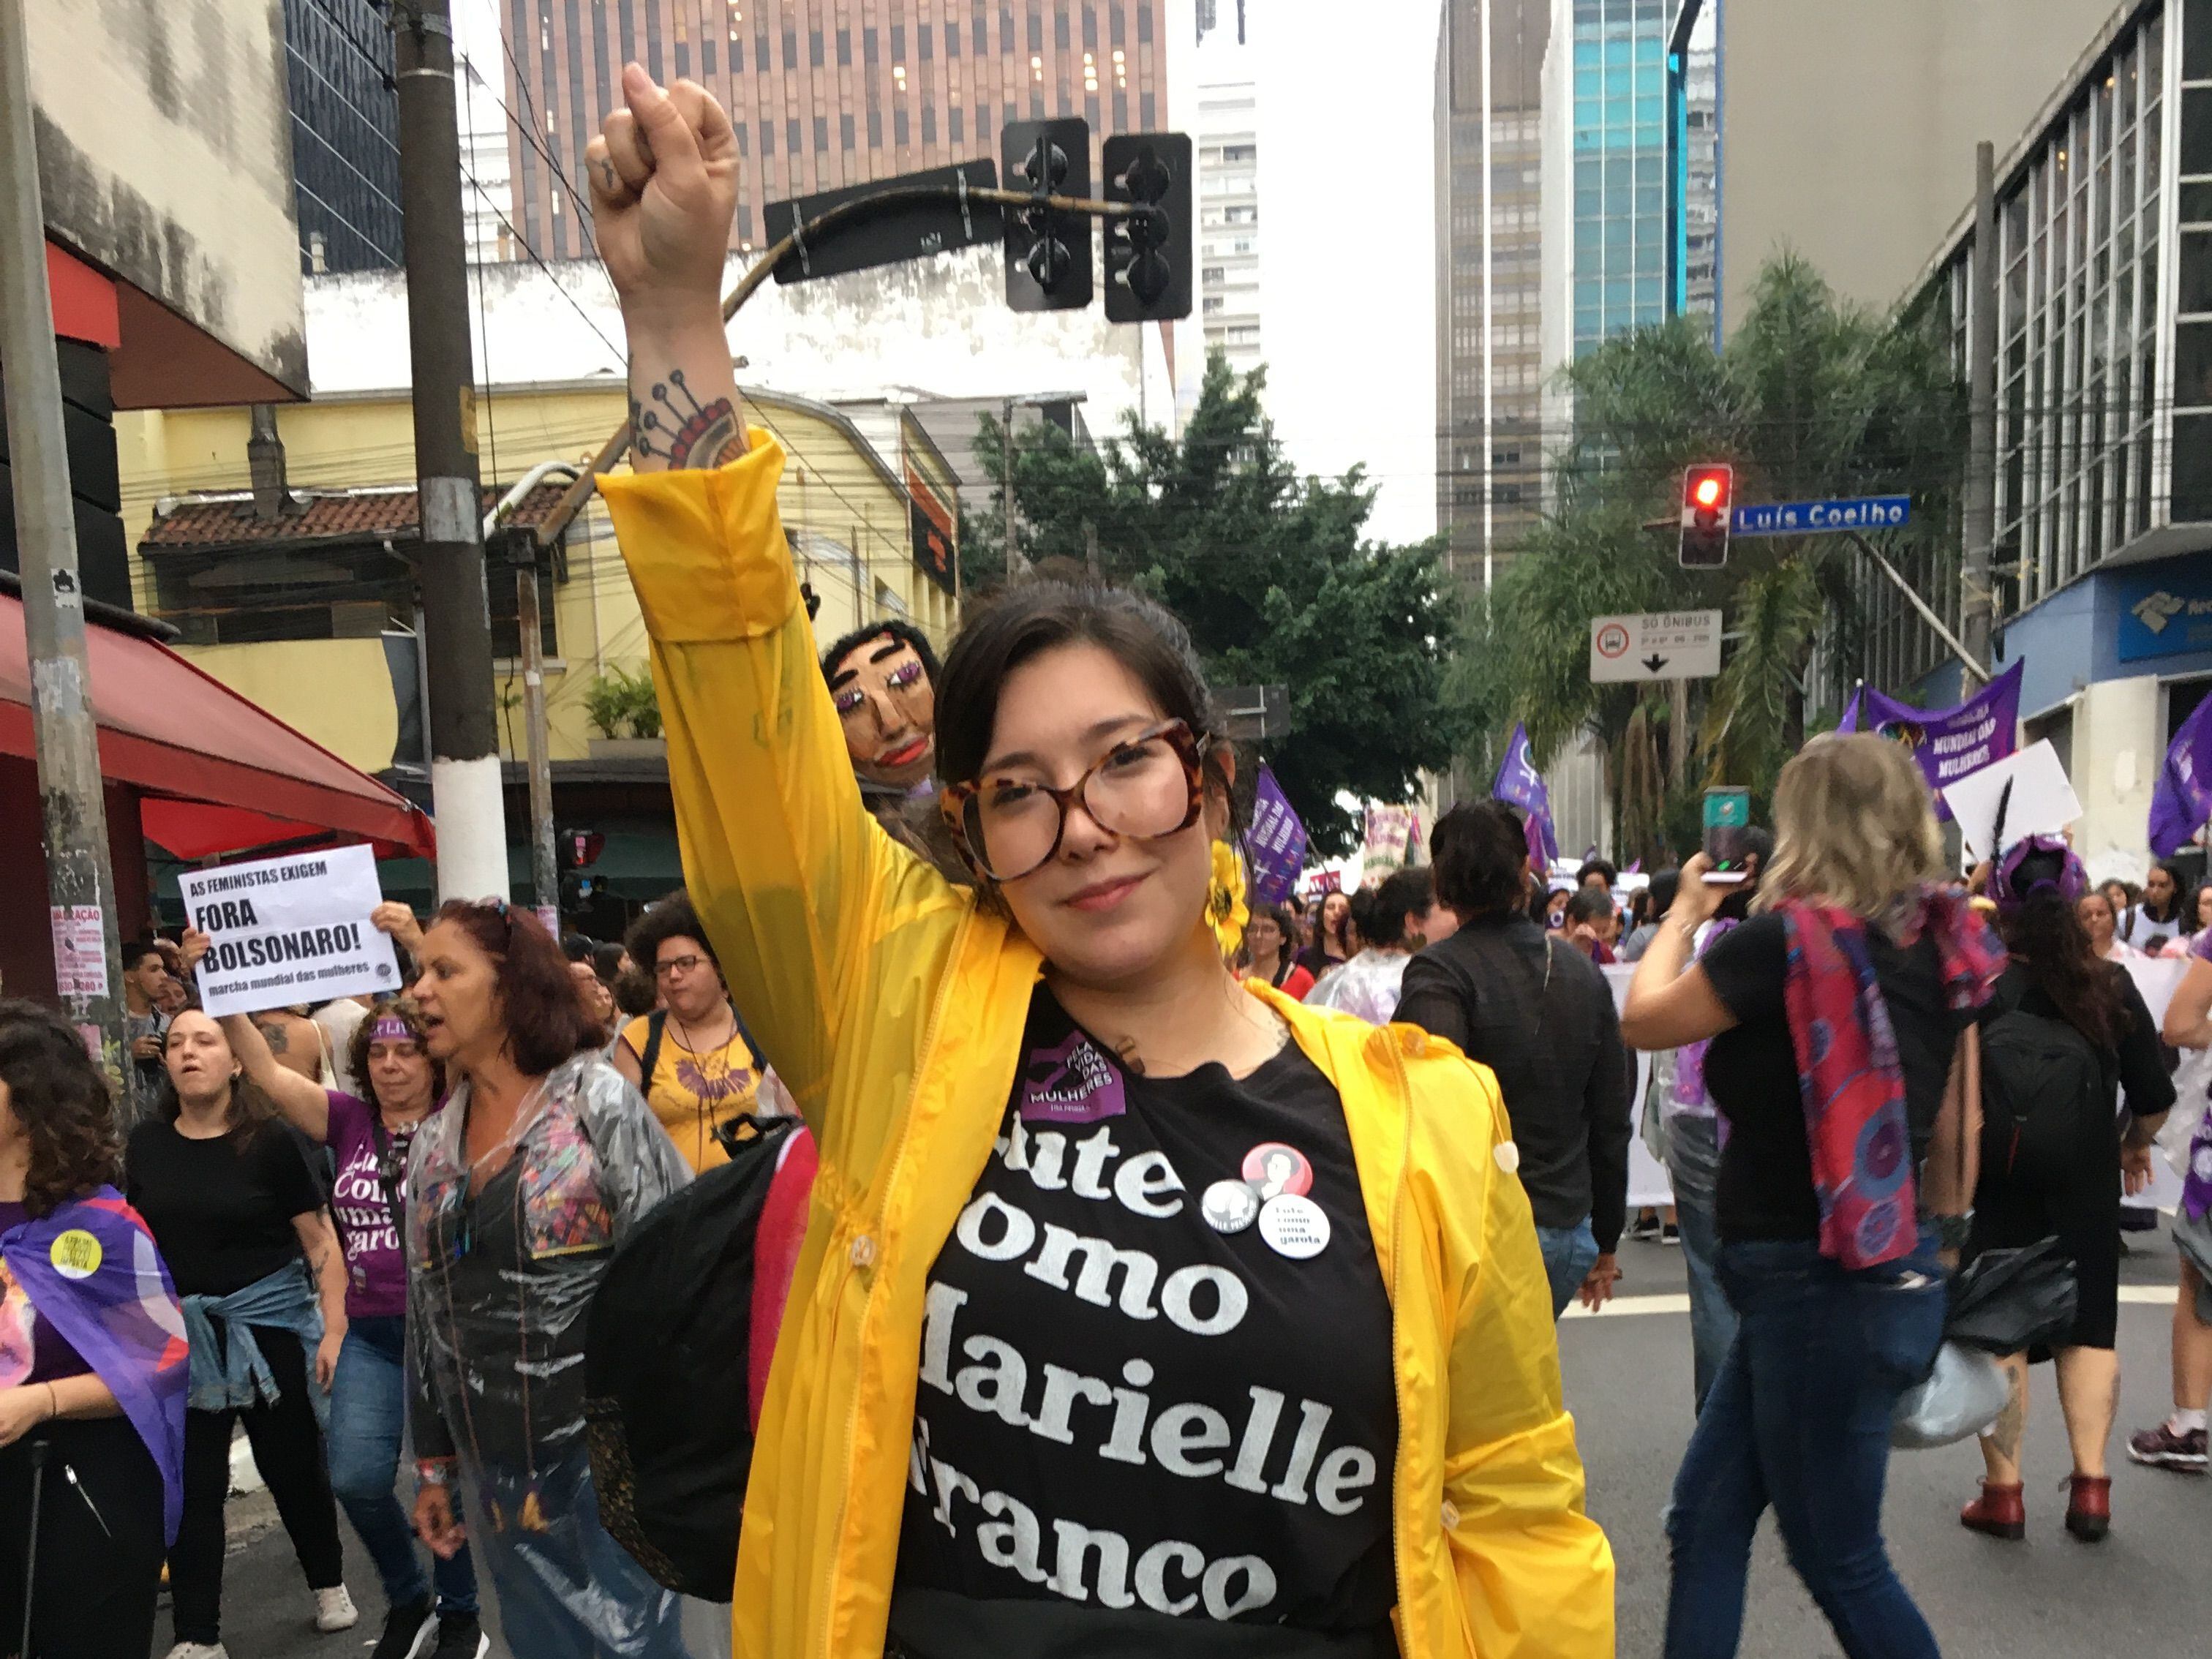 A professora Natália com a camiseta em homenagem a Marielle Franco.